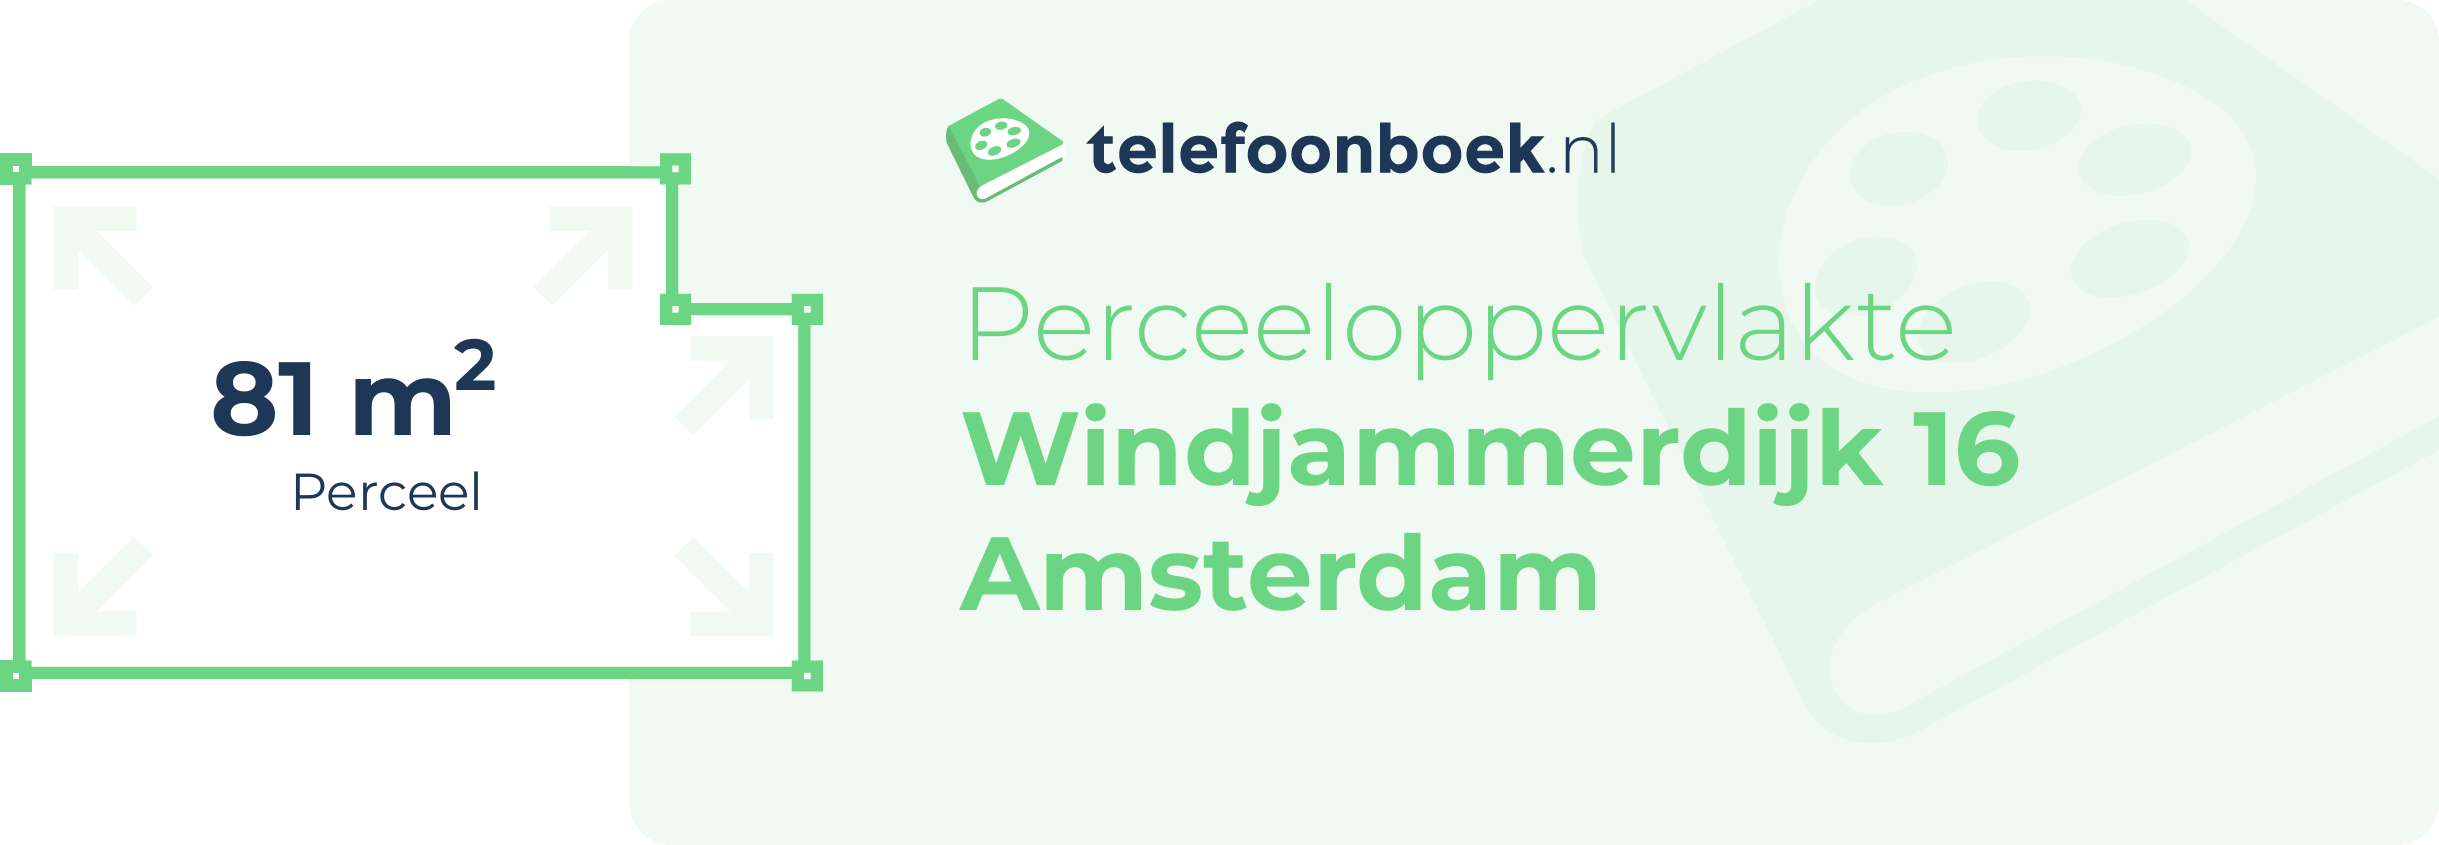 Perceeloppervlakte Windjammerdijk 16 Amsterdam